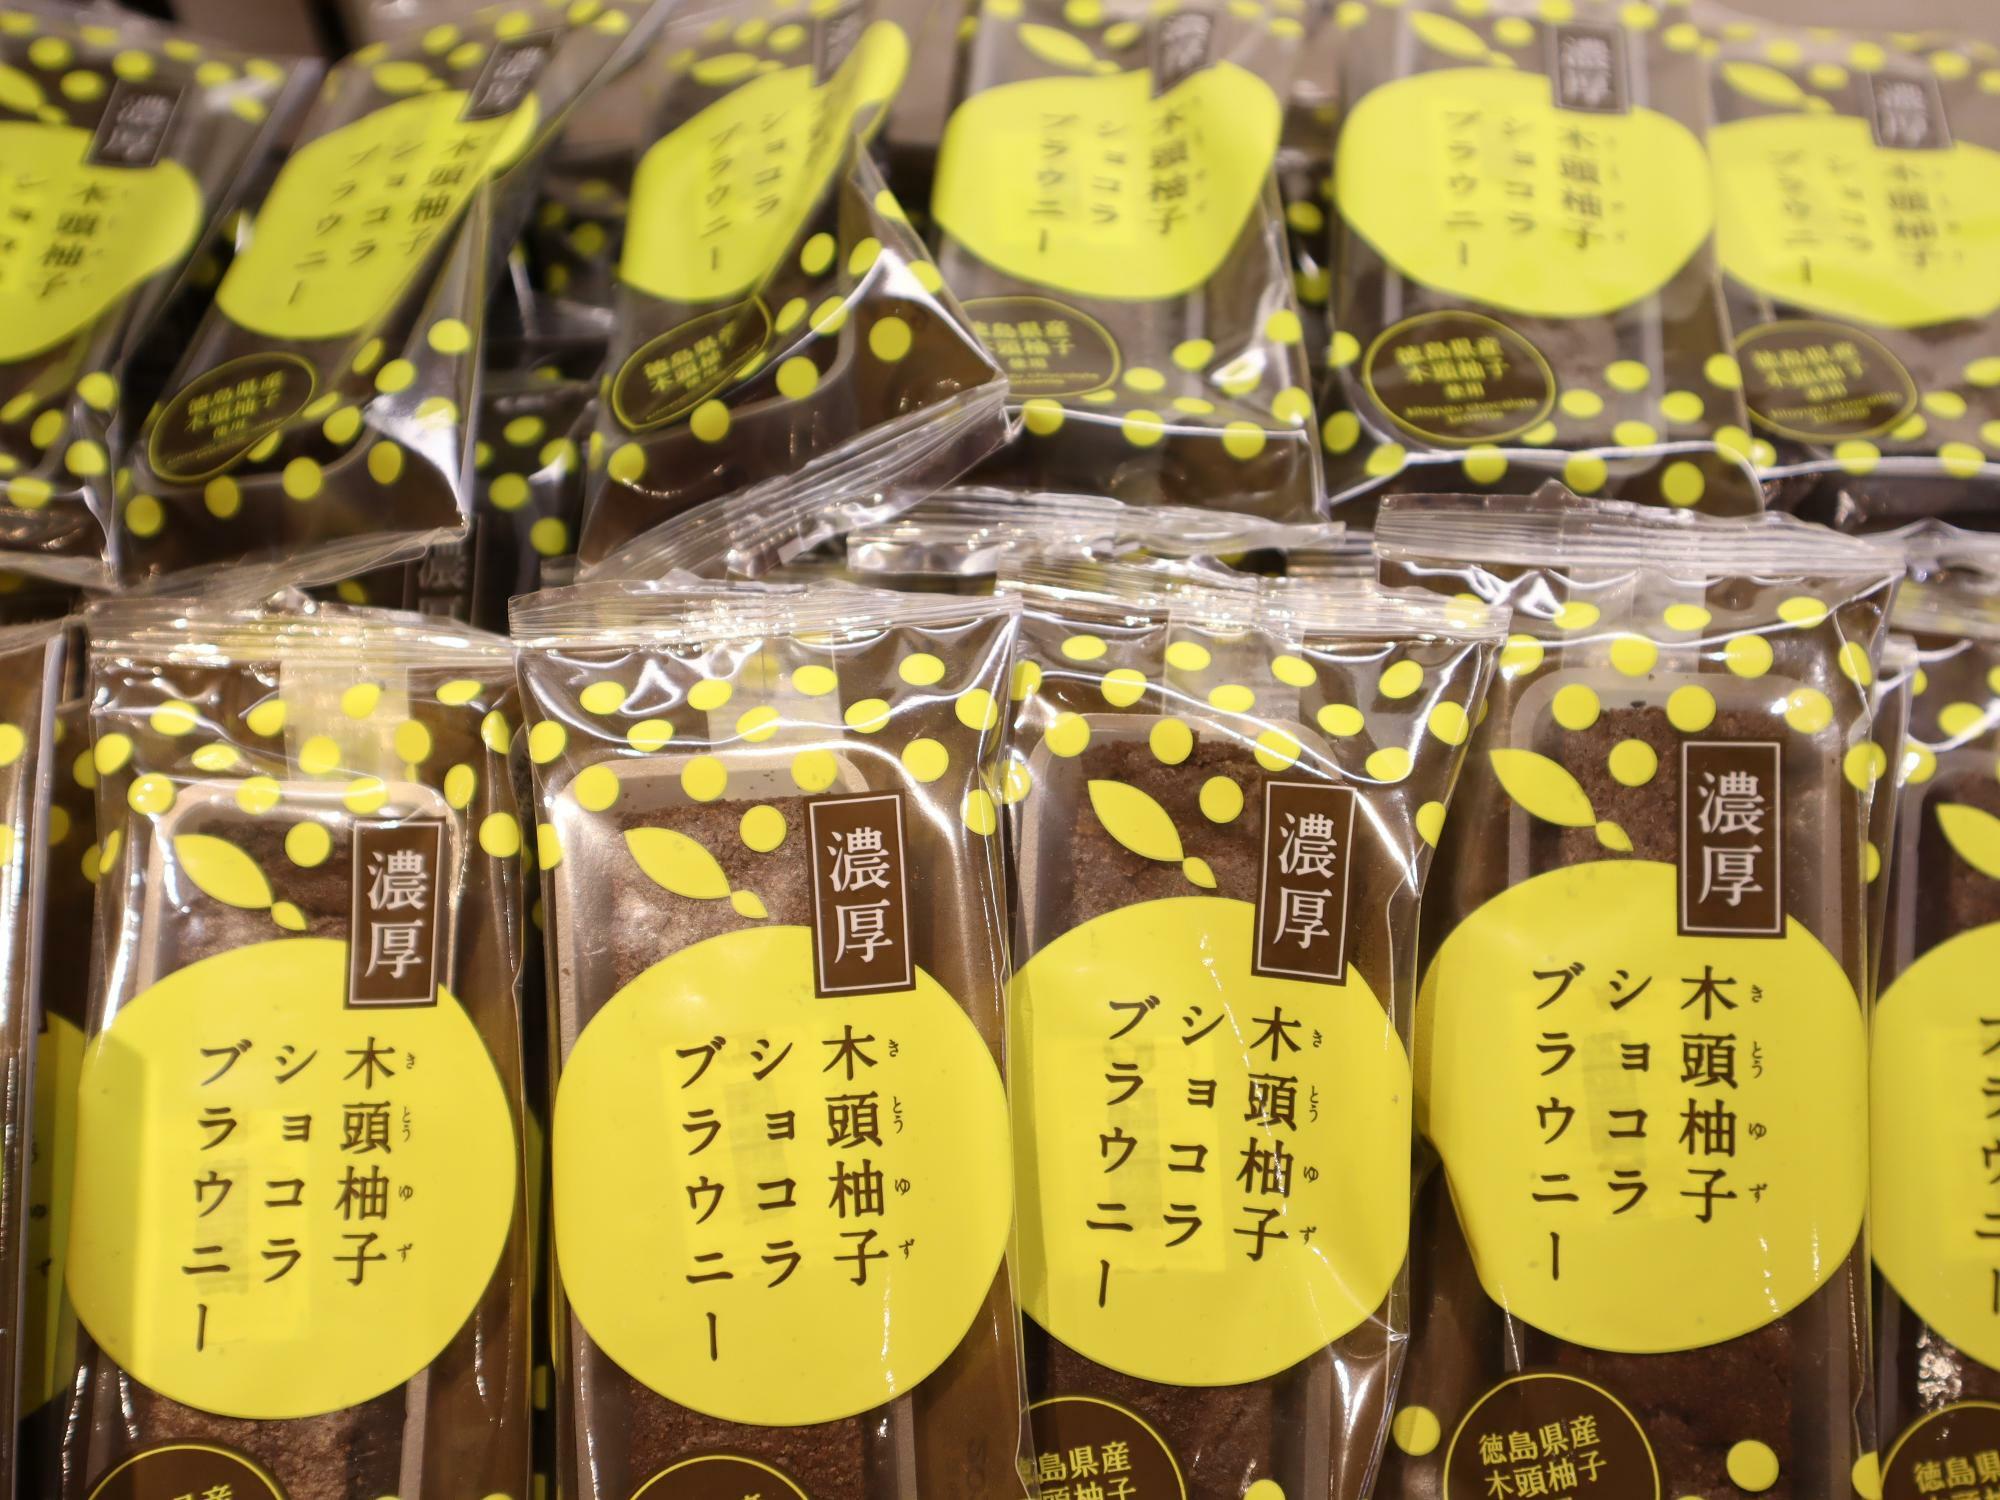 徳島駅クレメントプラザ地下1F「あとりえ市」で購入できる「木頭柚子ショコラブラウニー」。